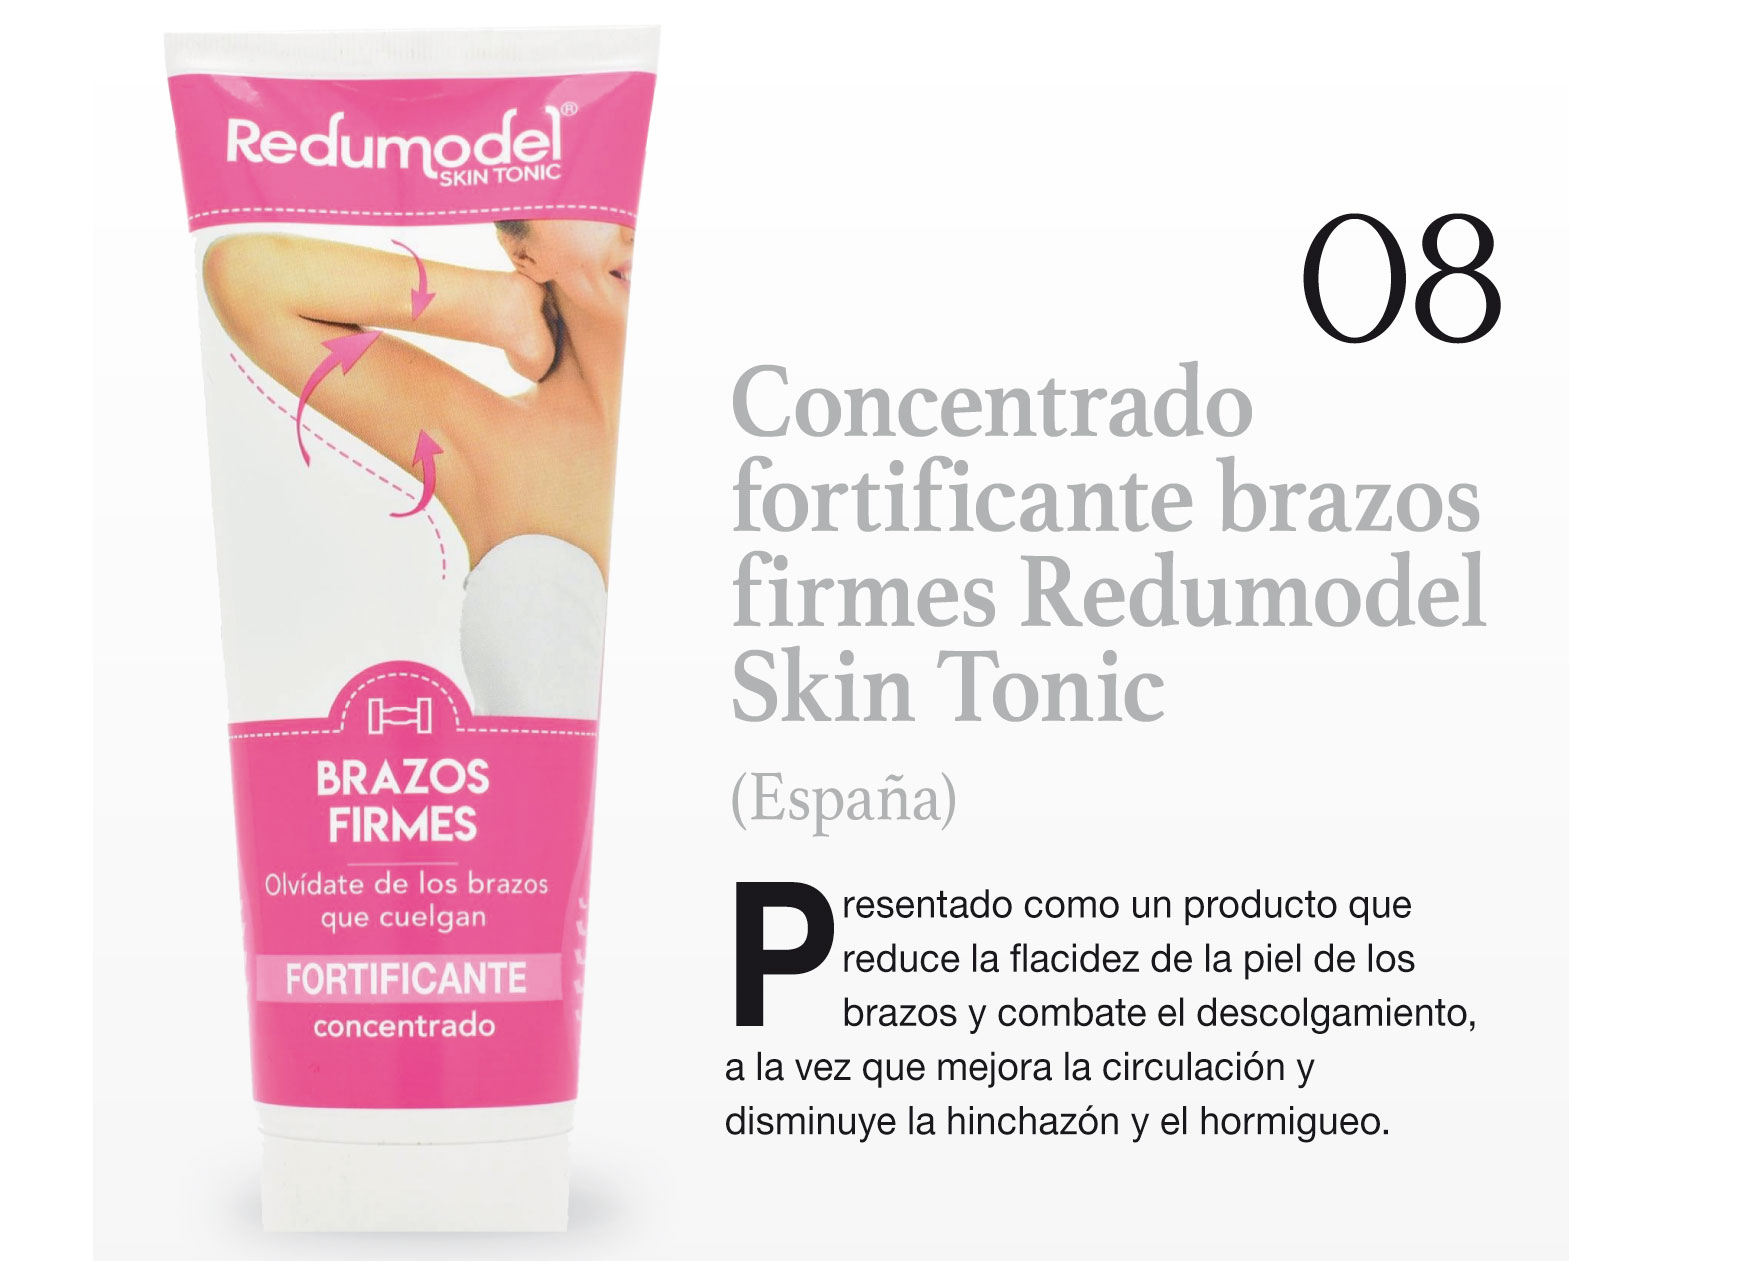 Concentrado fortificante brazos firmes Redumodel Skin Tonic (España)